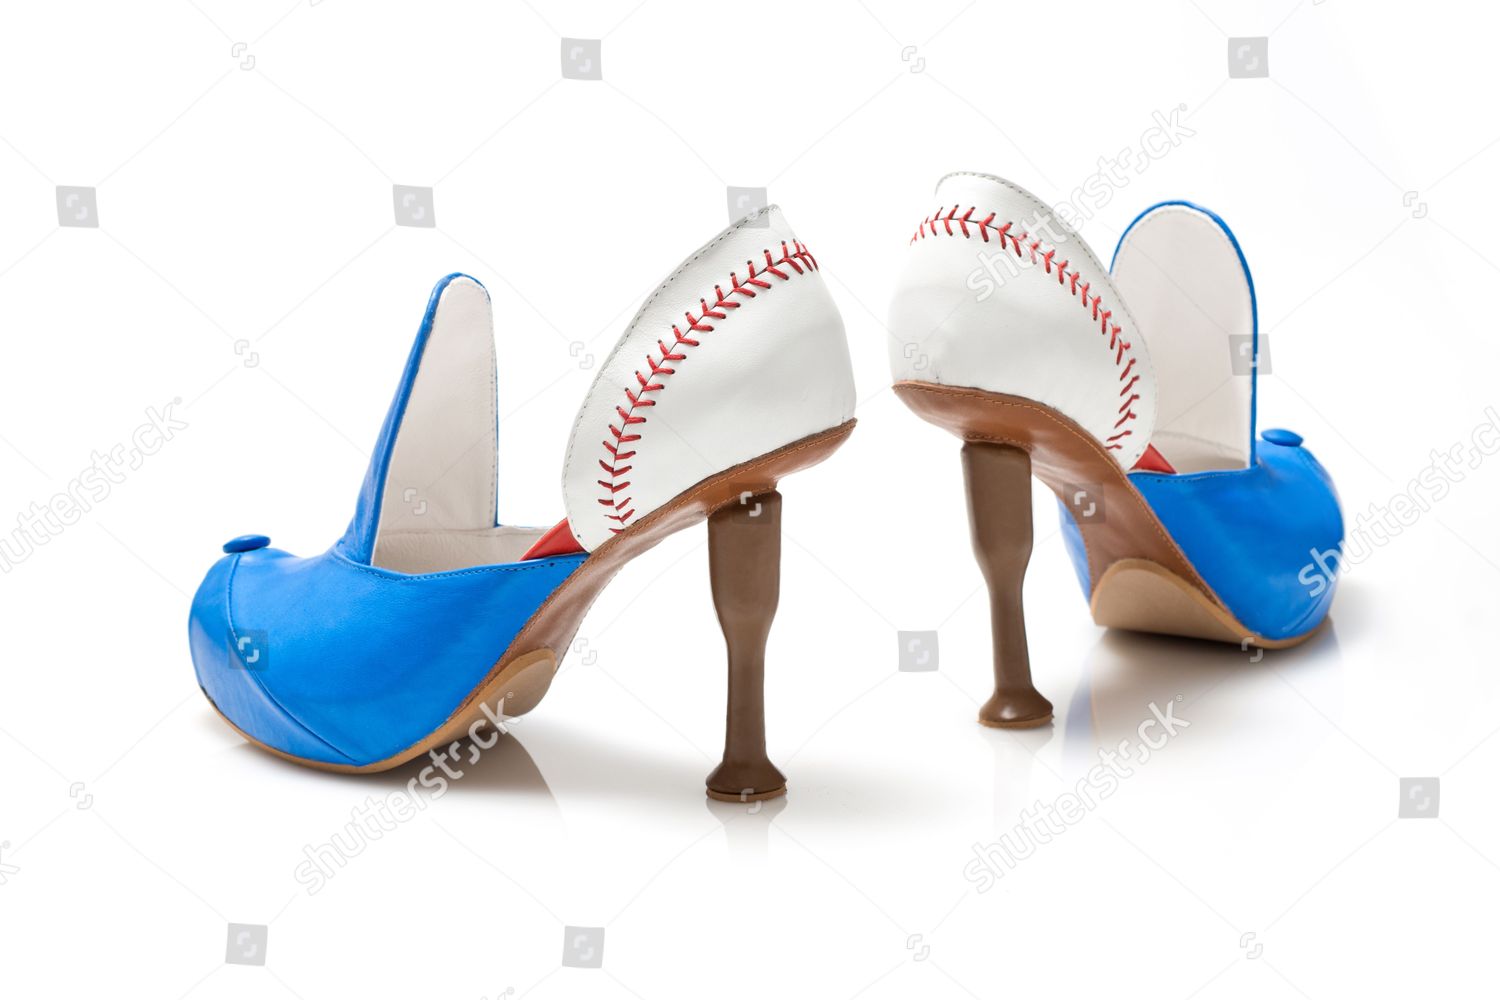 baseball themed shoes